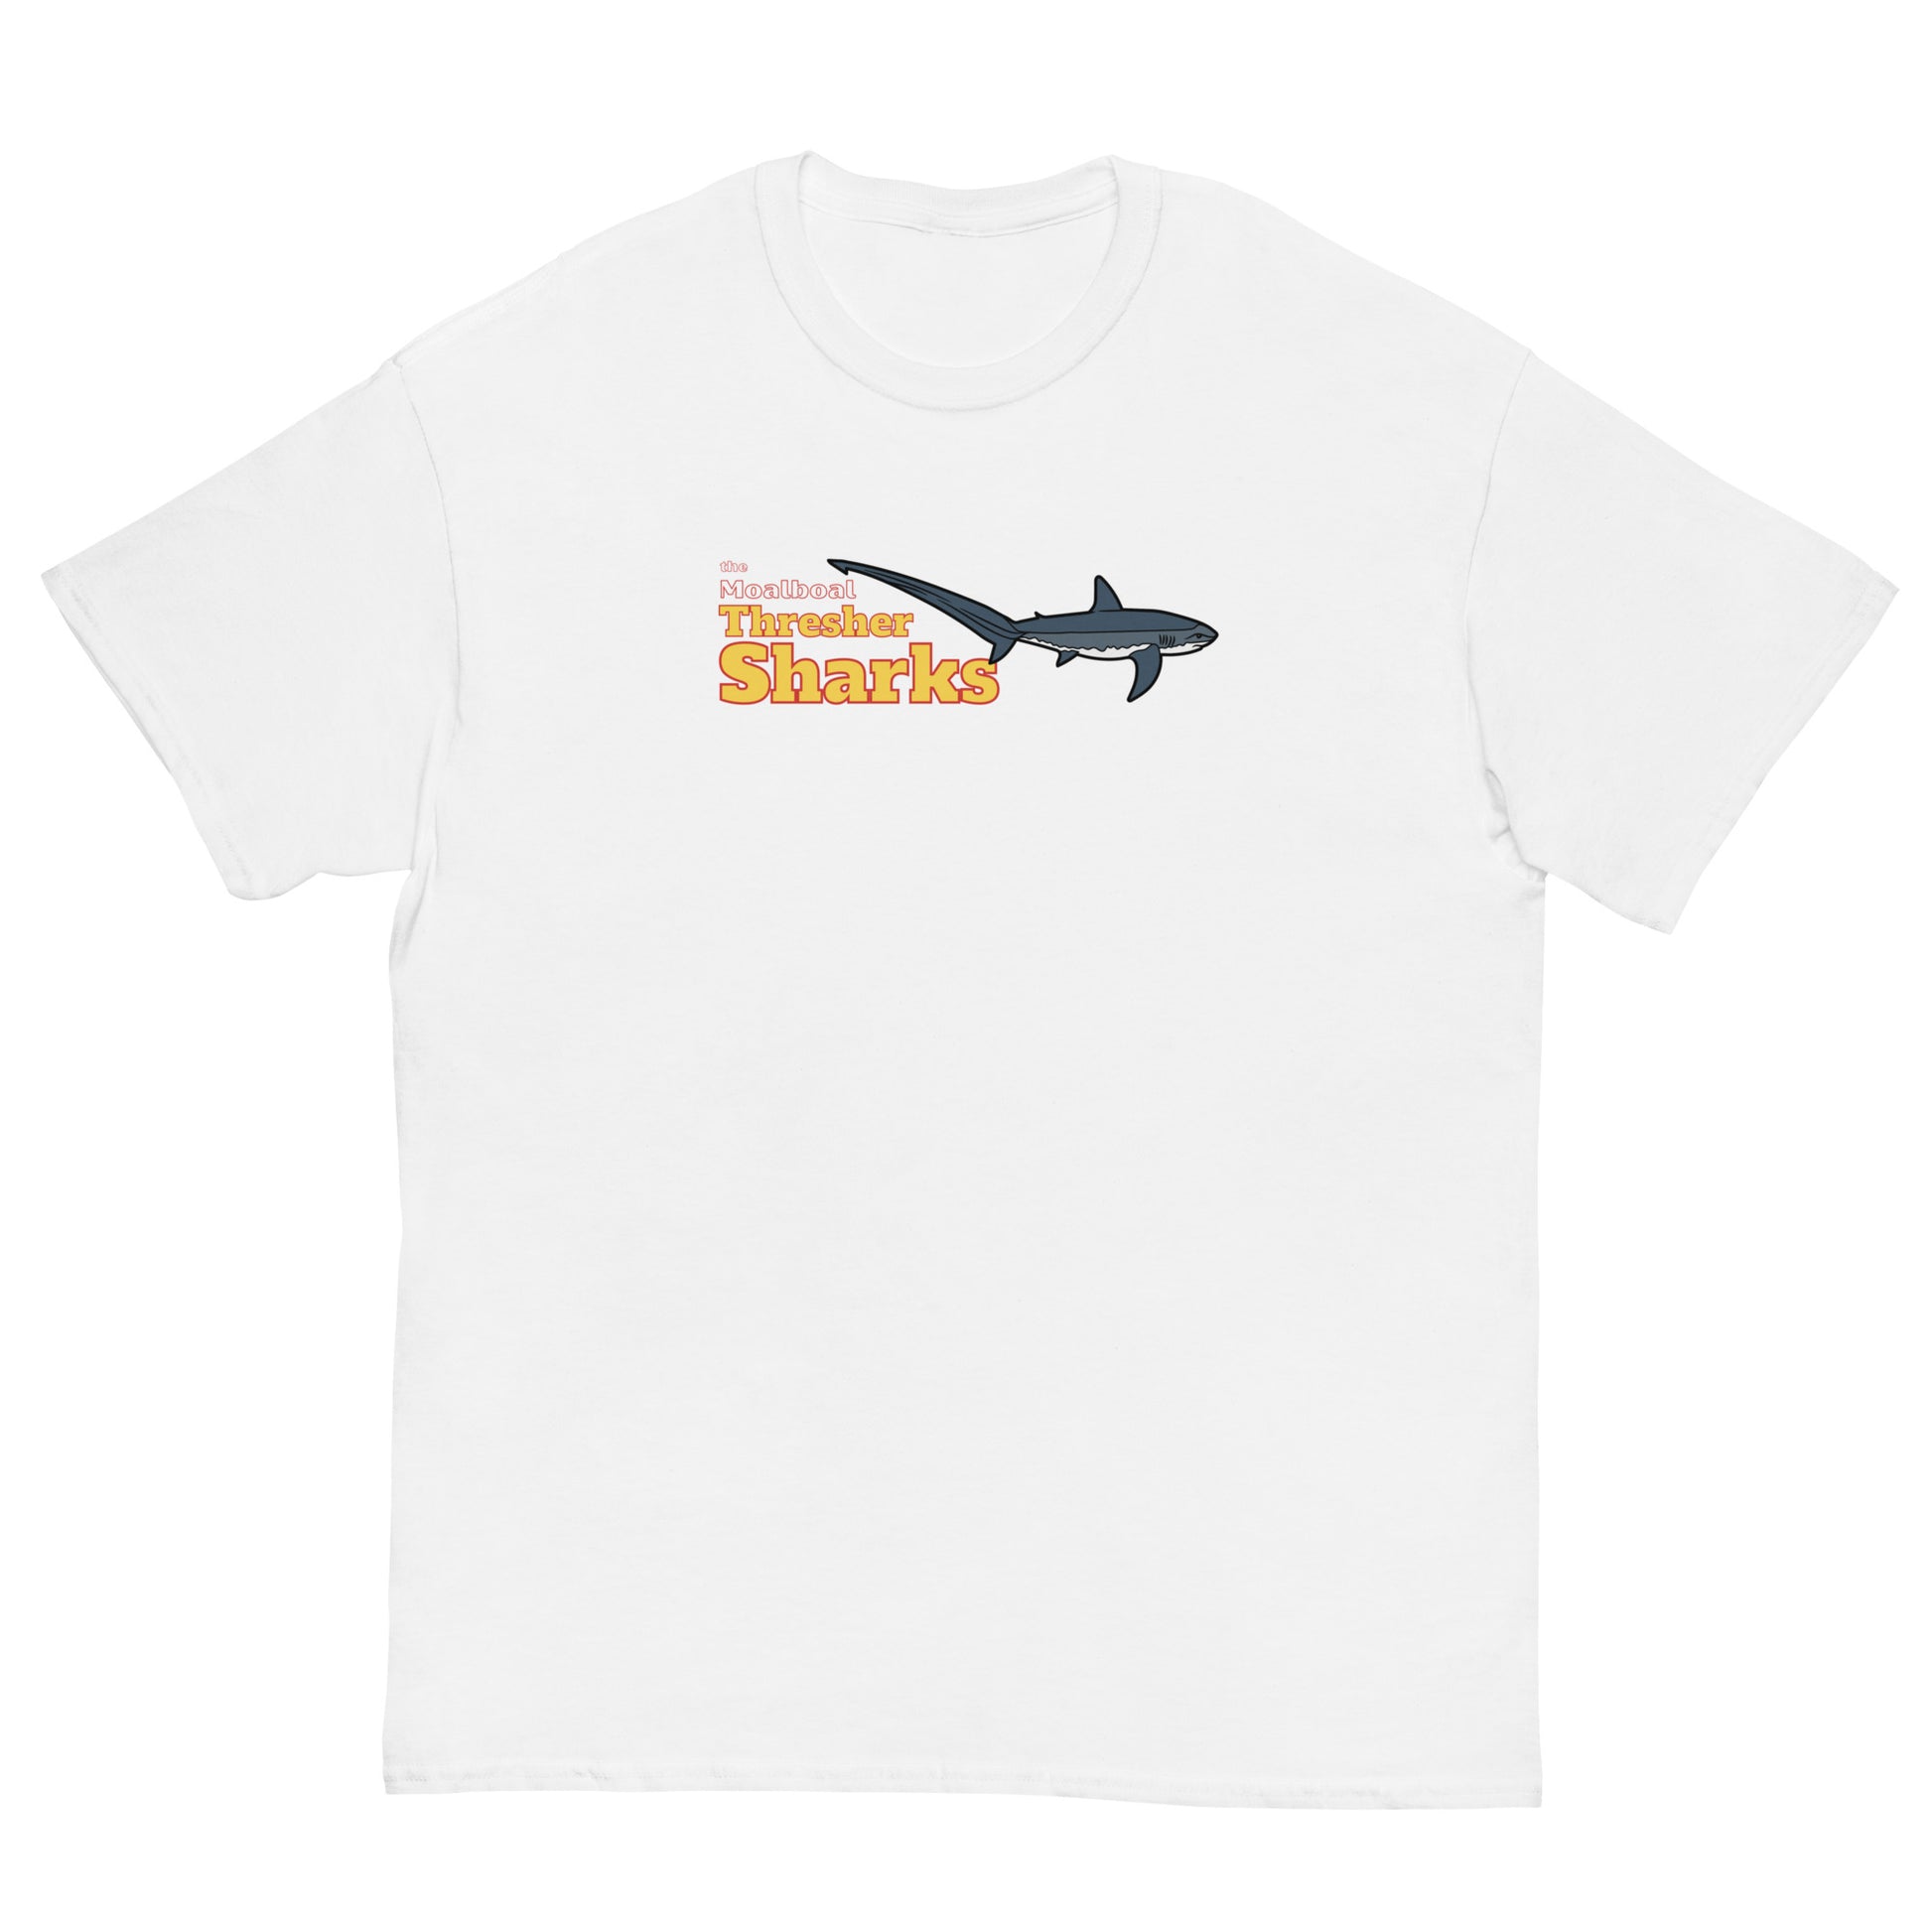 thresher shark t-shirt